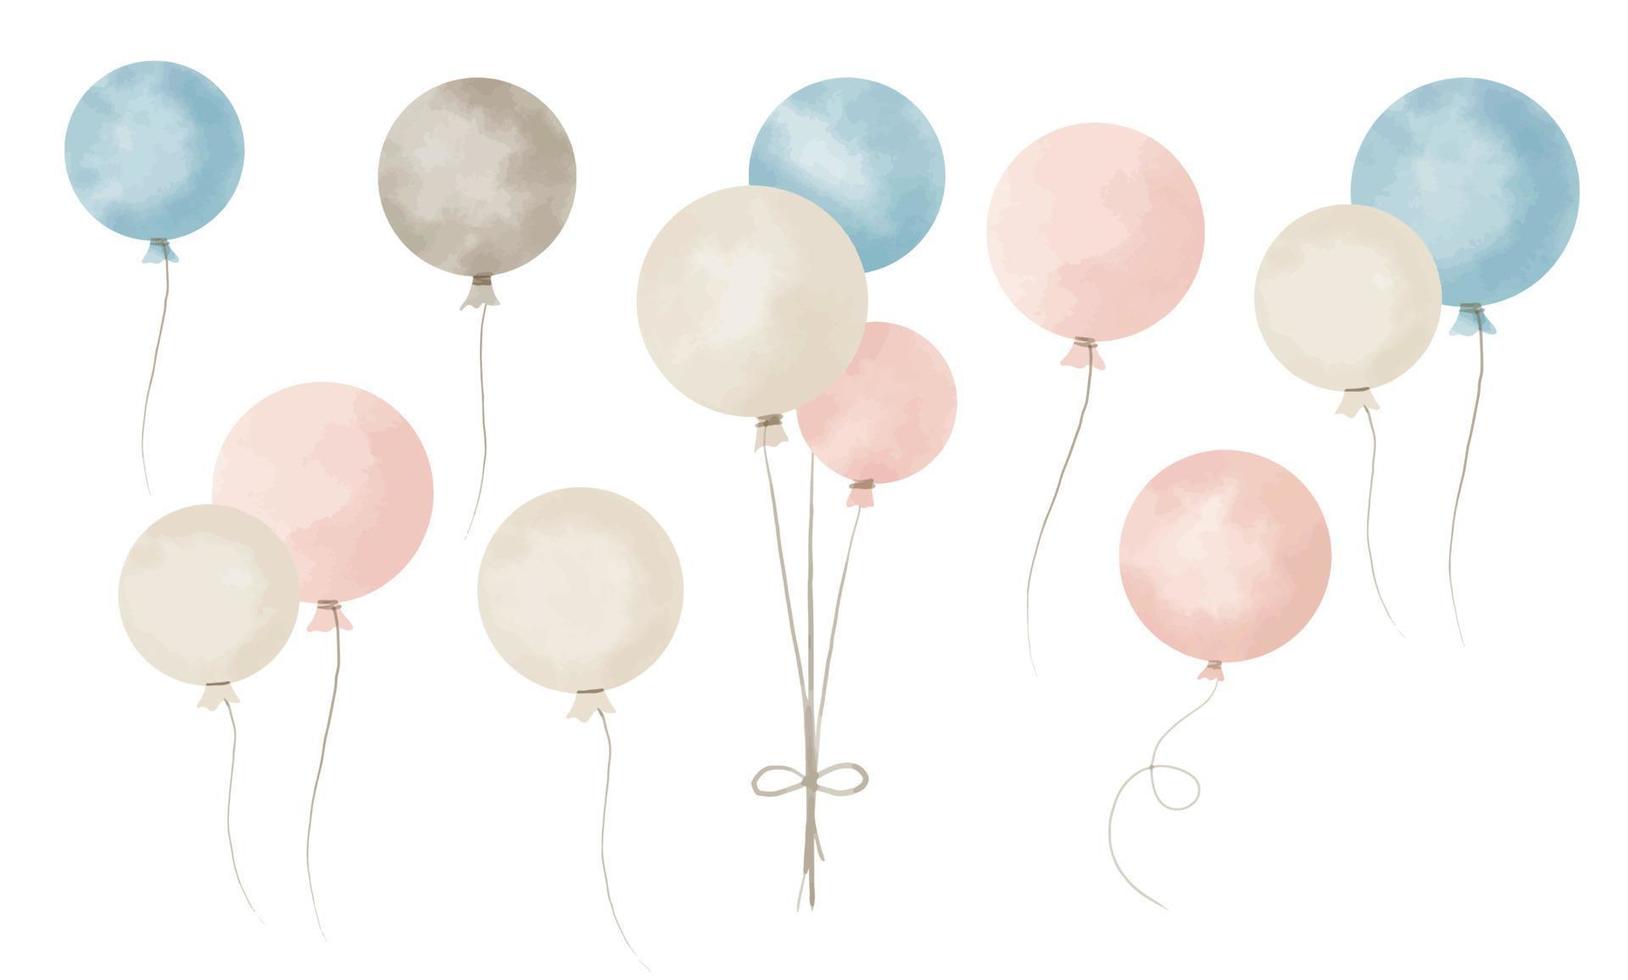 Fondo de feliz cumpleaños, globos de colores, fondo azul, recién